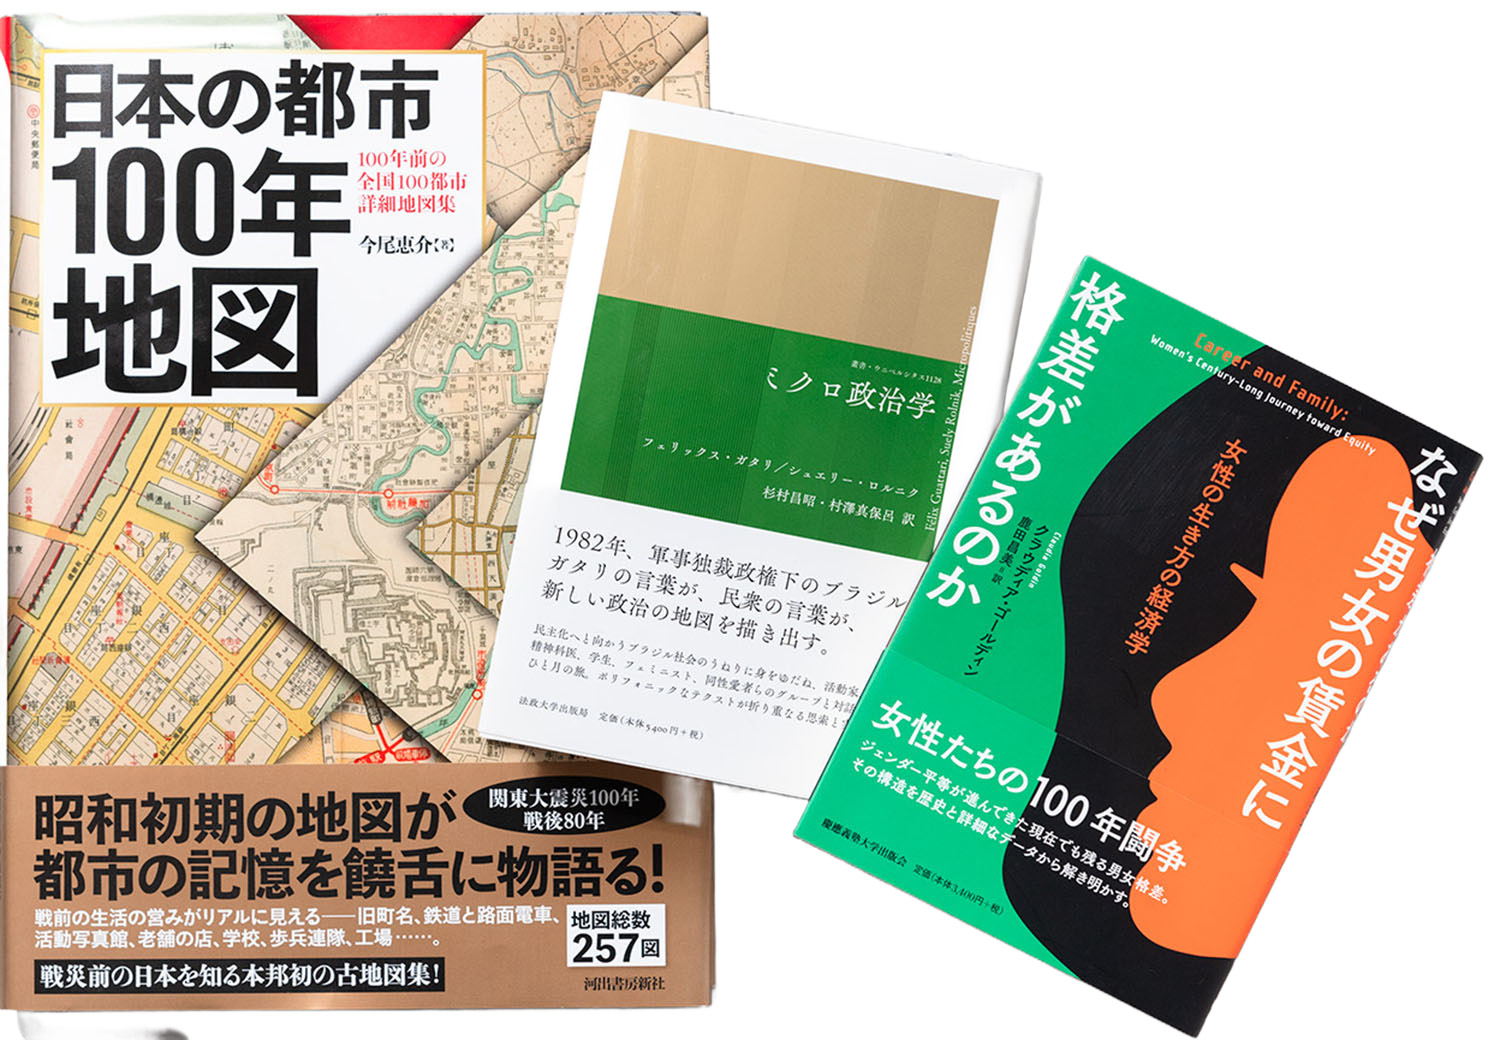 『日本の都市100年地図』（河出書房新社）、『ミクロ政治学』（法政大学出版局）、『なぜ男女の賃金に格差があるのか』（慶應義塾大学出版会）。値が張る人文書もビビらず買切りで入荷。売れたときは、“対話”が成就したとき。